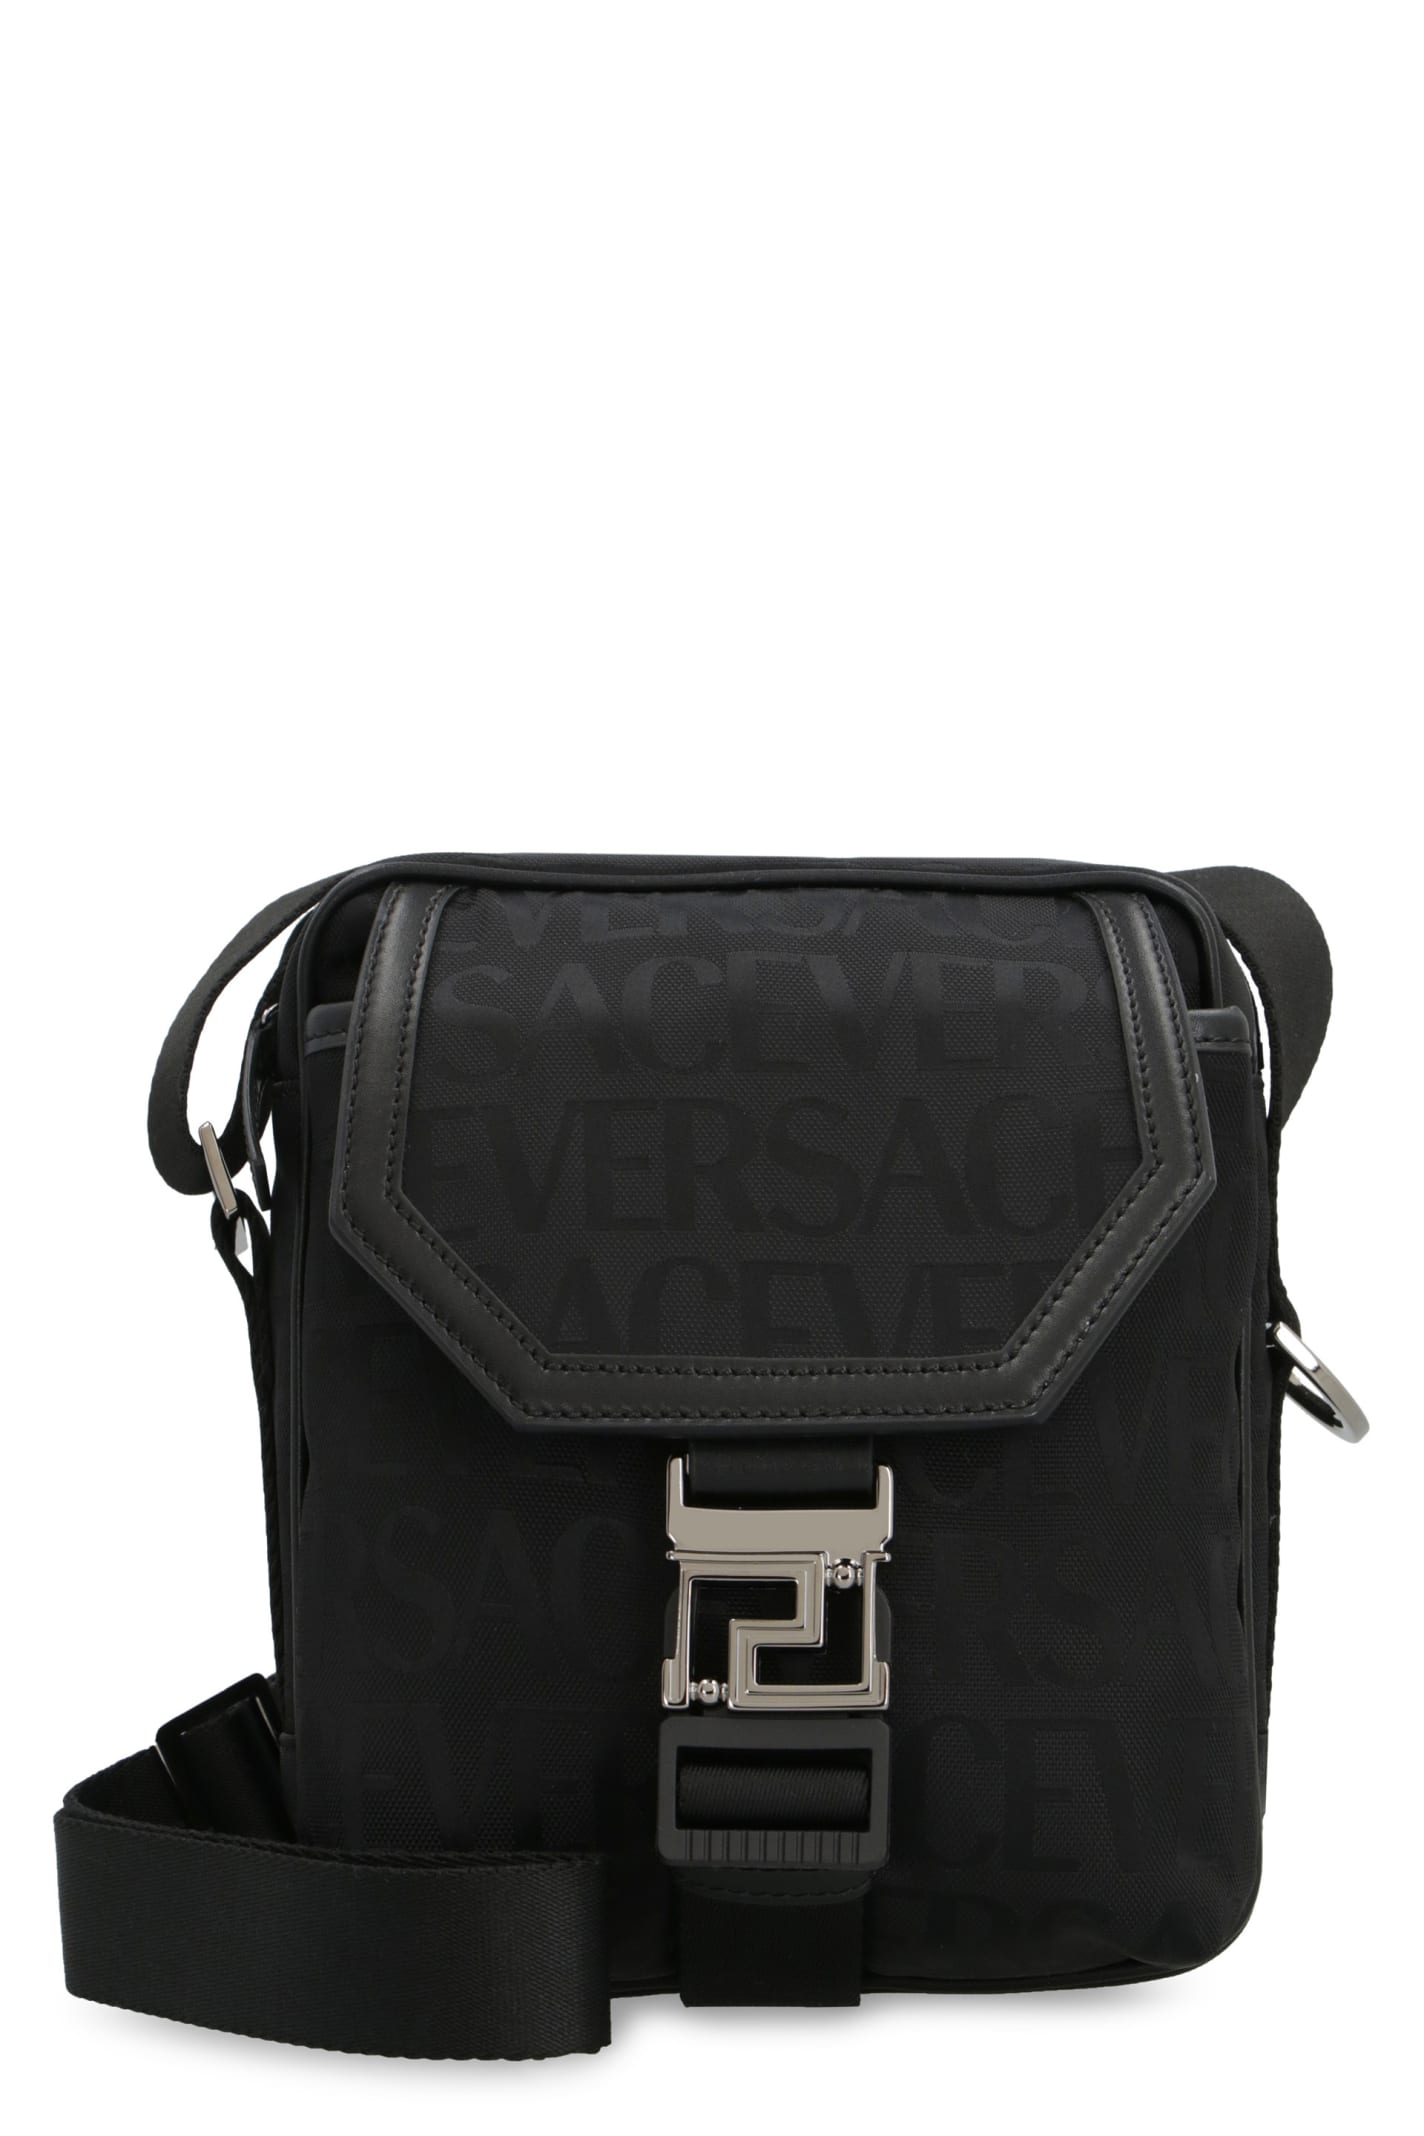 Versace Canvas Messenger Bag In E